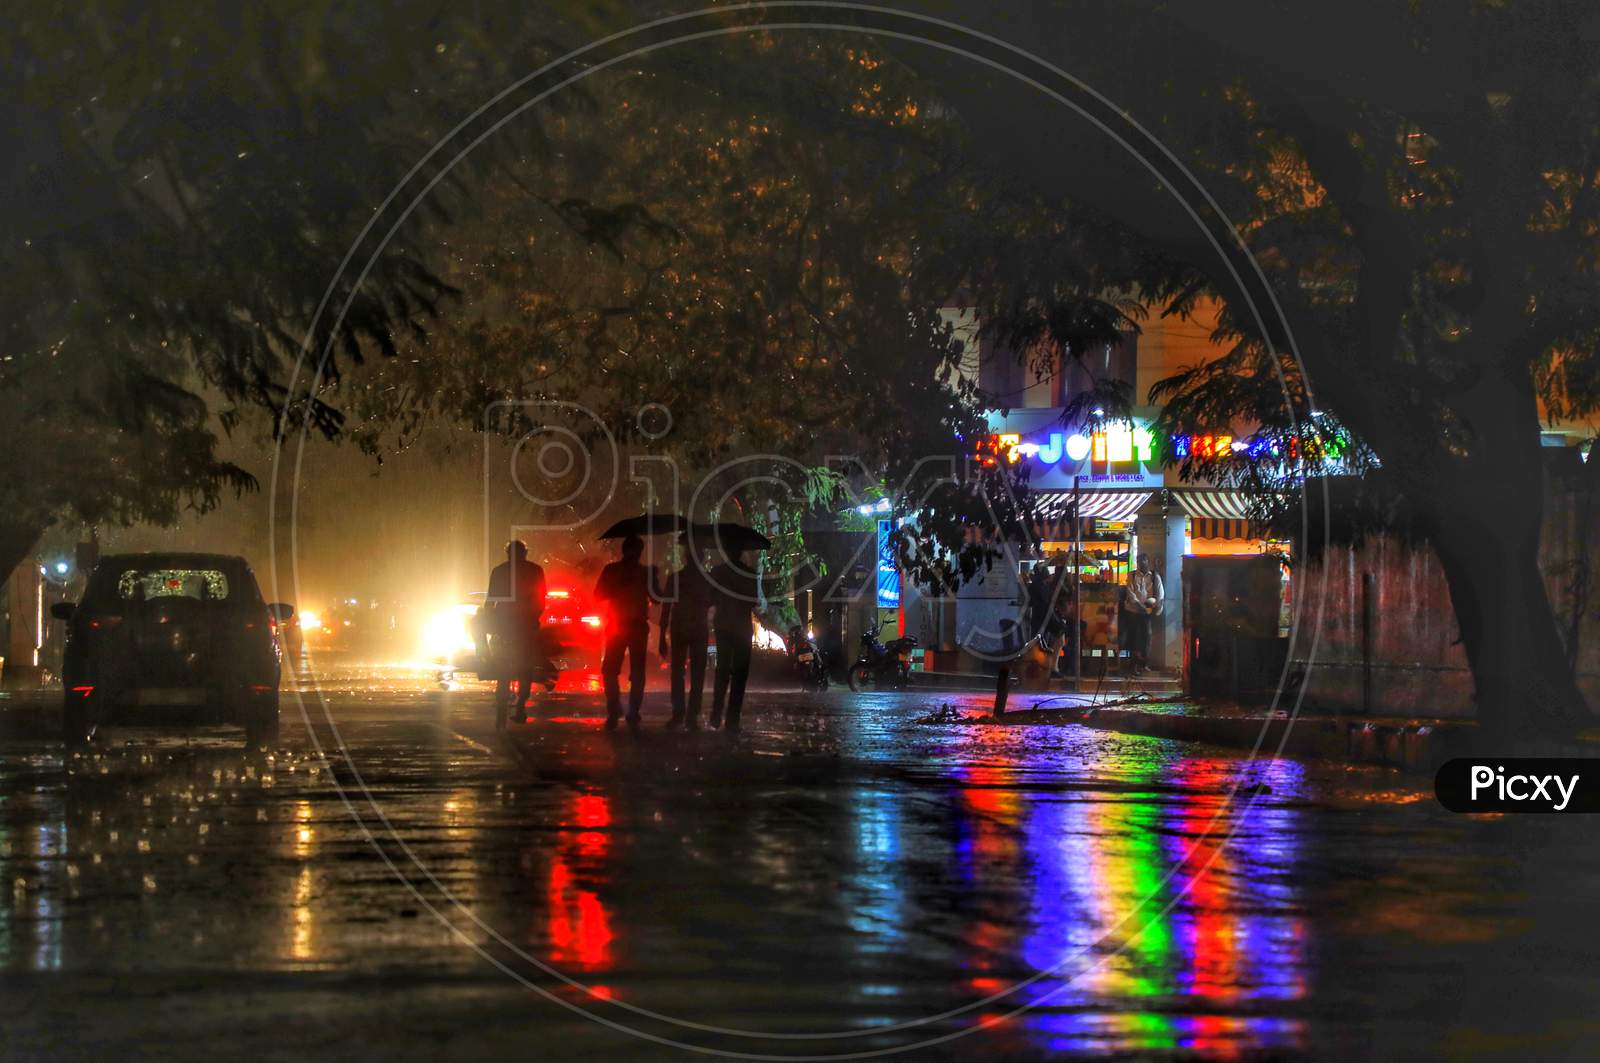 Annanagar, When it rains!